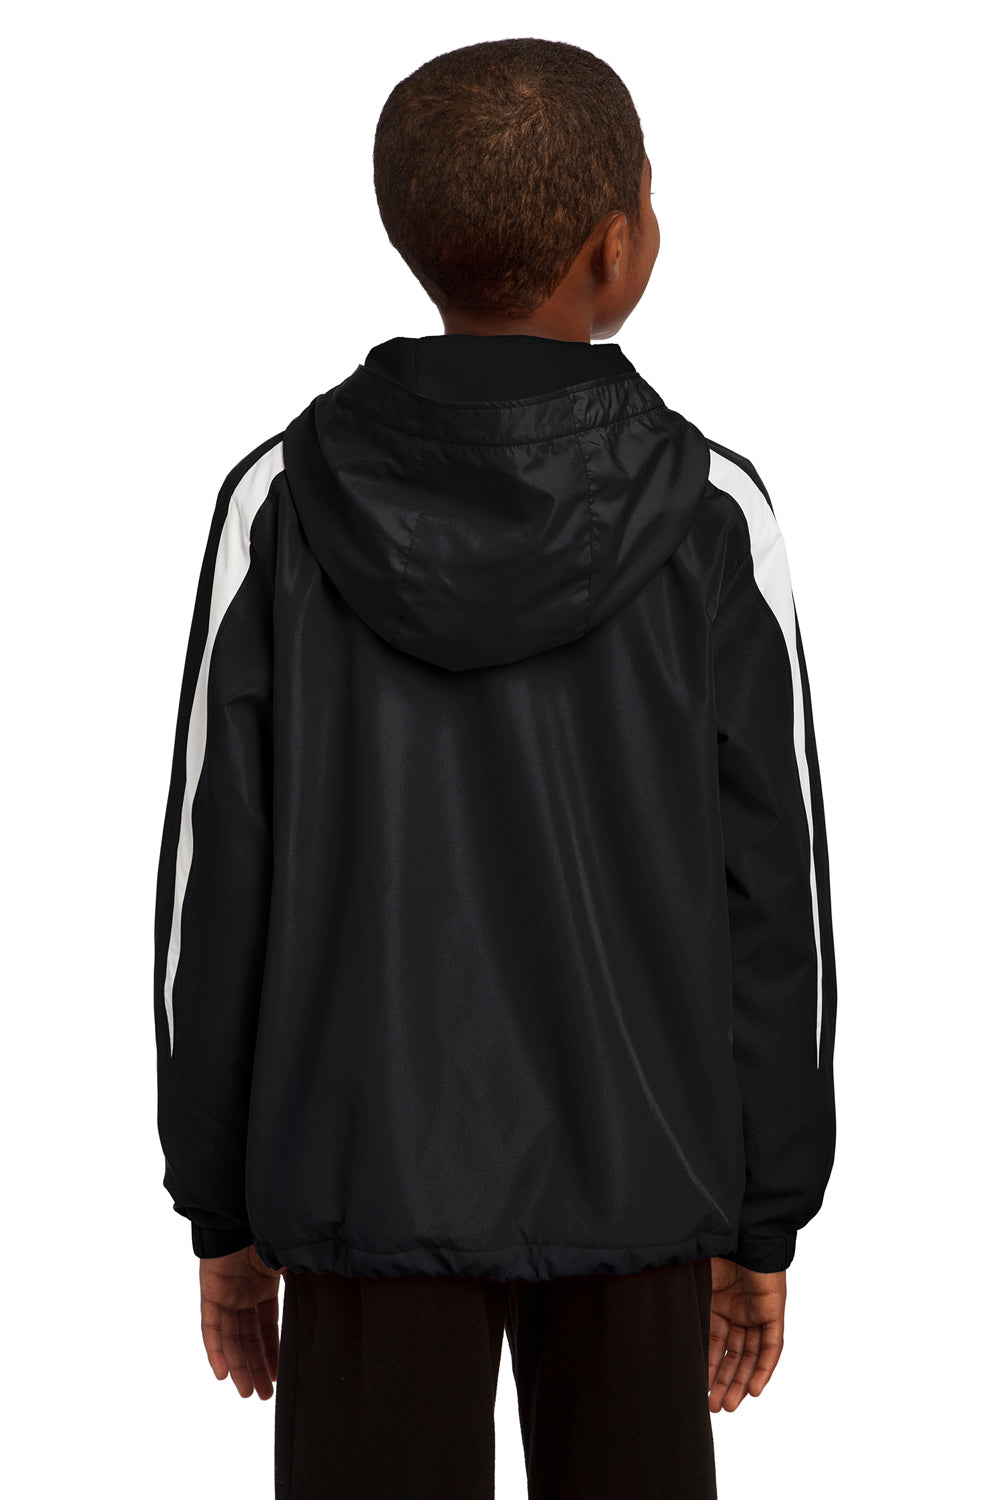 Sport-Tek YST81 Youth Full Zip Hooded Jacket Black Back